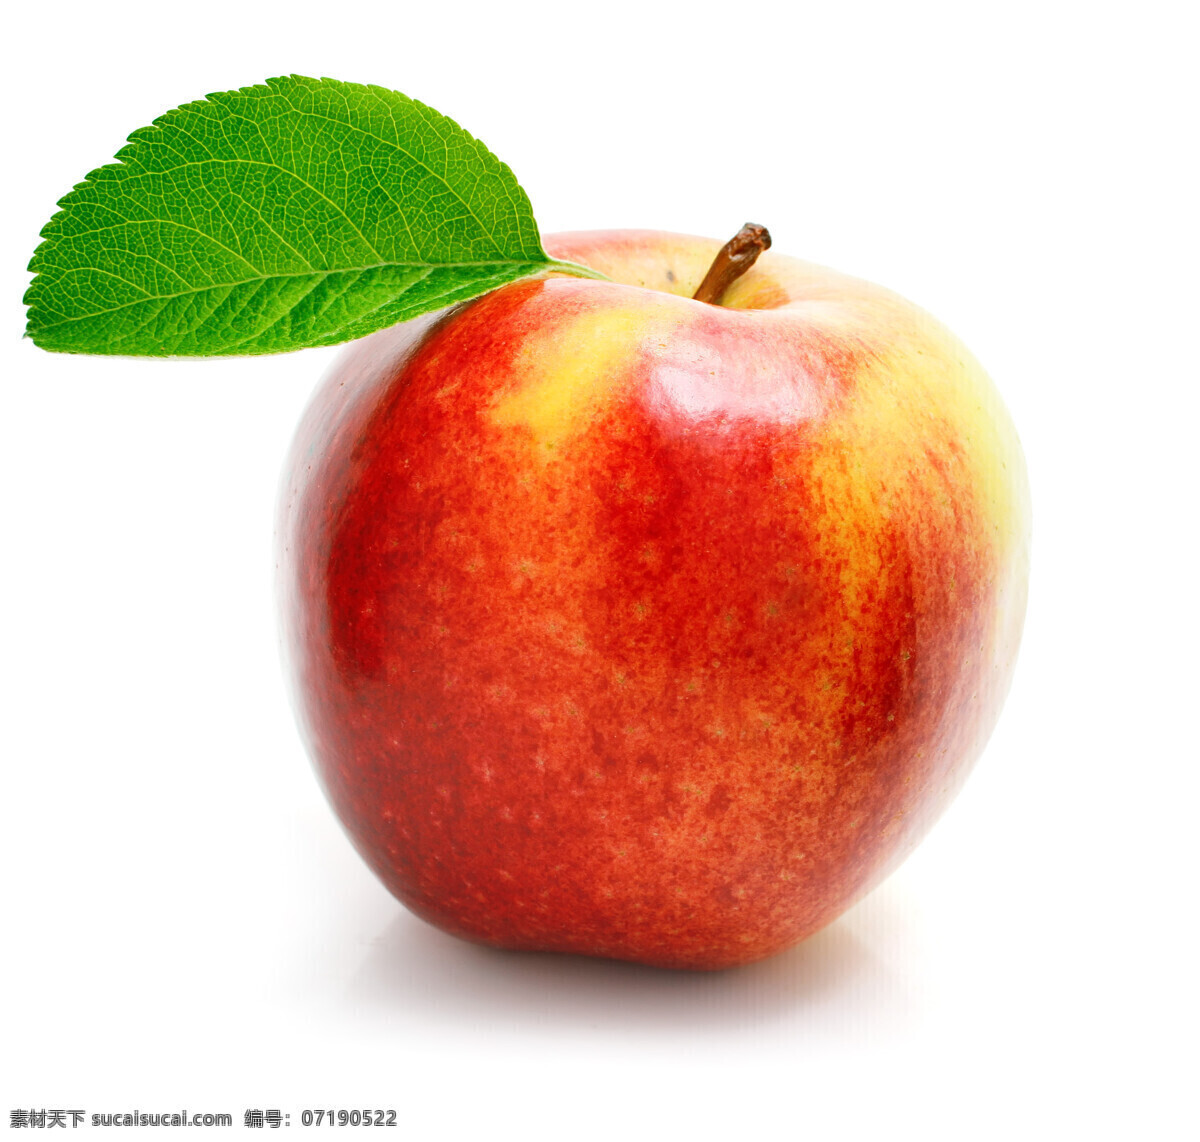 新鲜 红苹果 苹果 绿叶 新鲜水果 水果 摄影图 高清图片 苹果图片 餐饮美食